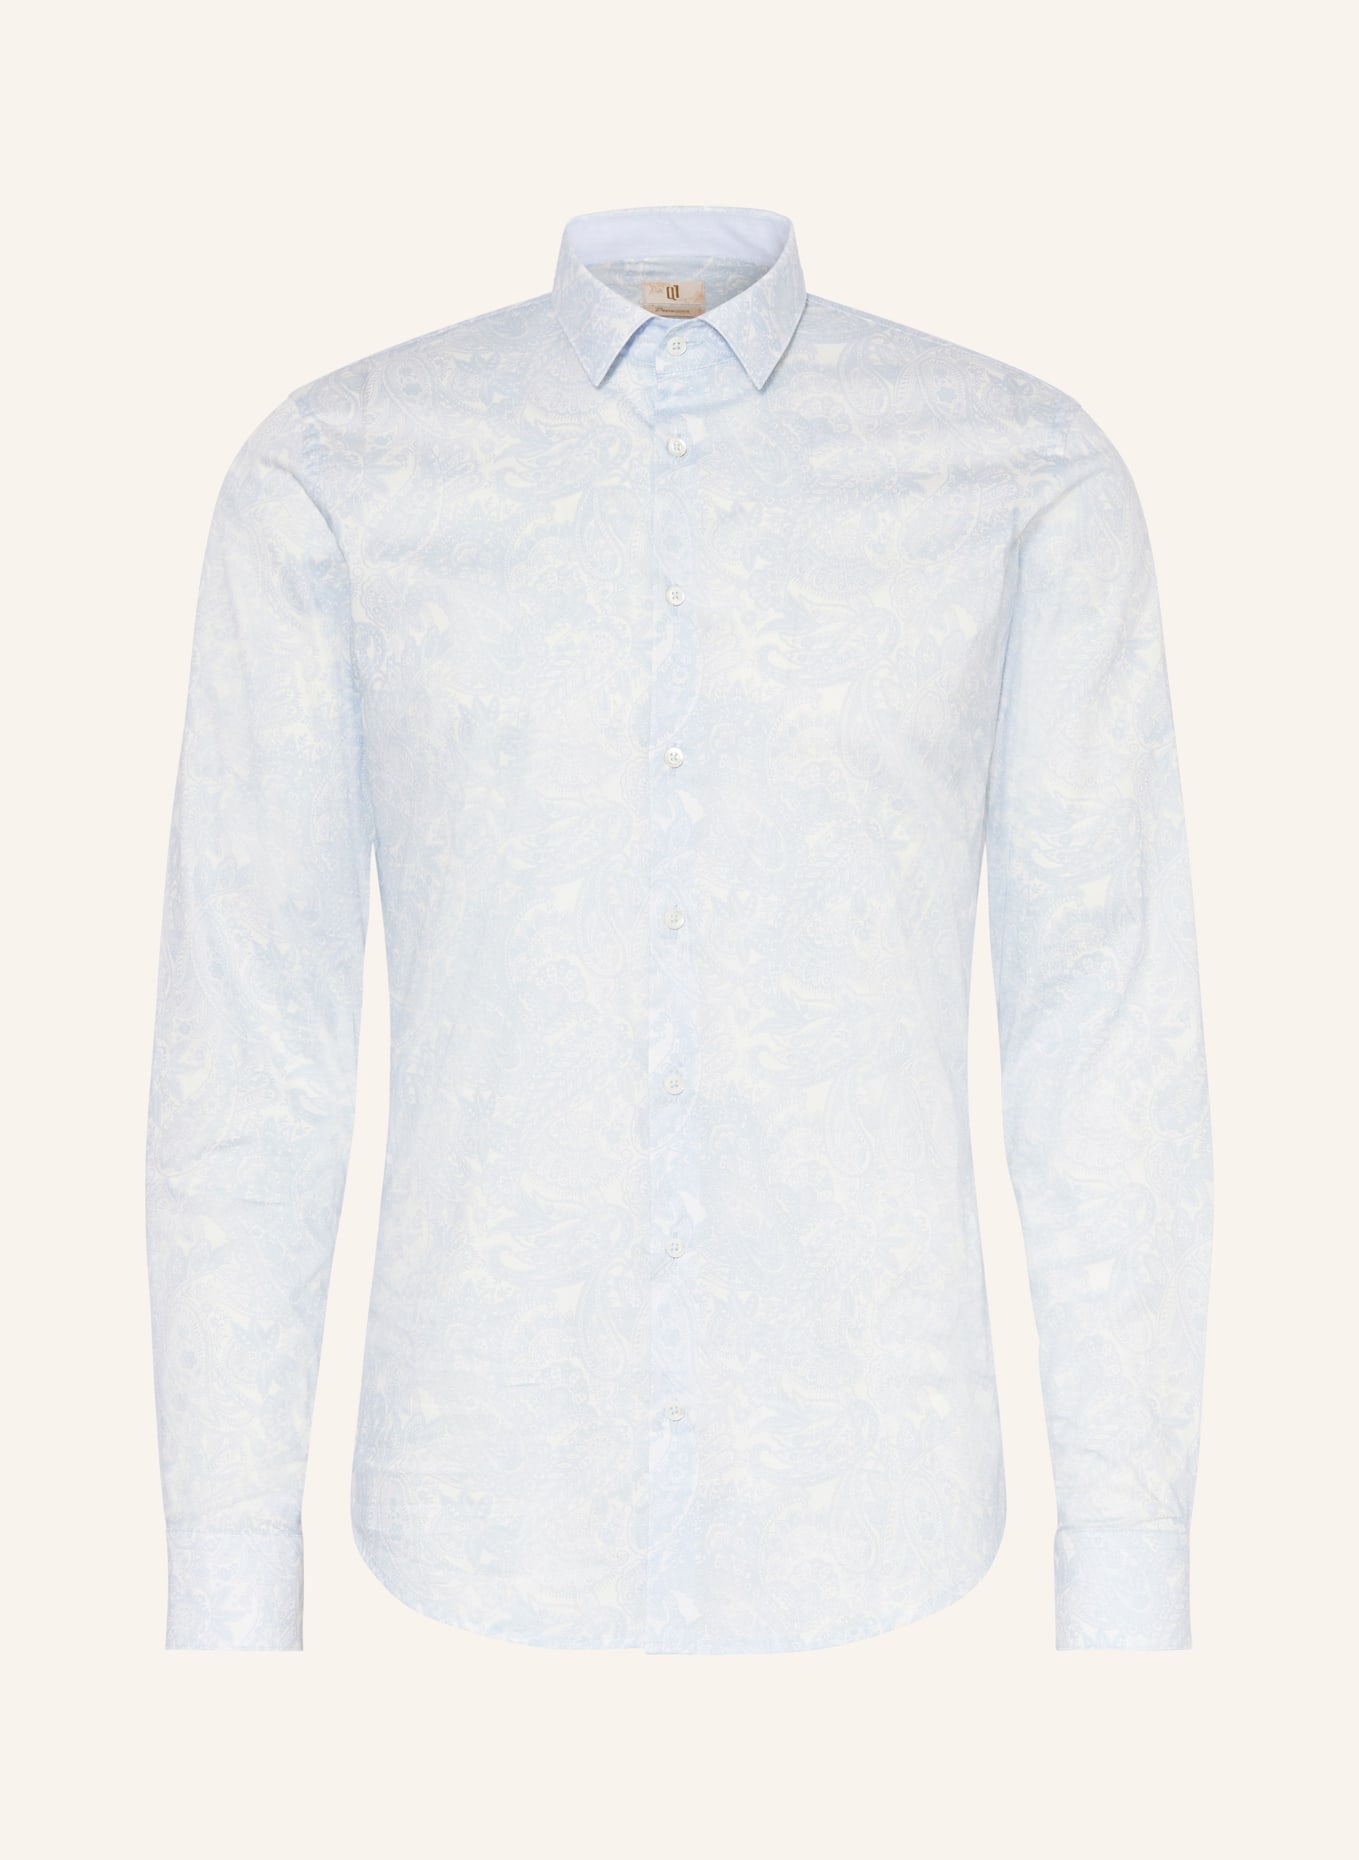 Q1 Manufaktur Shirt premium fit, Color: LIGHT BLUE/ WHITE (Image 1)